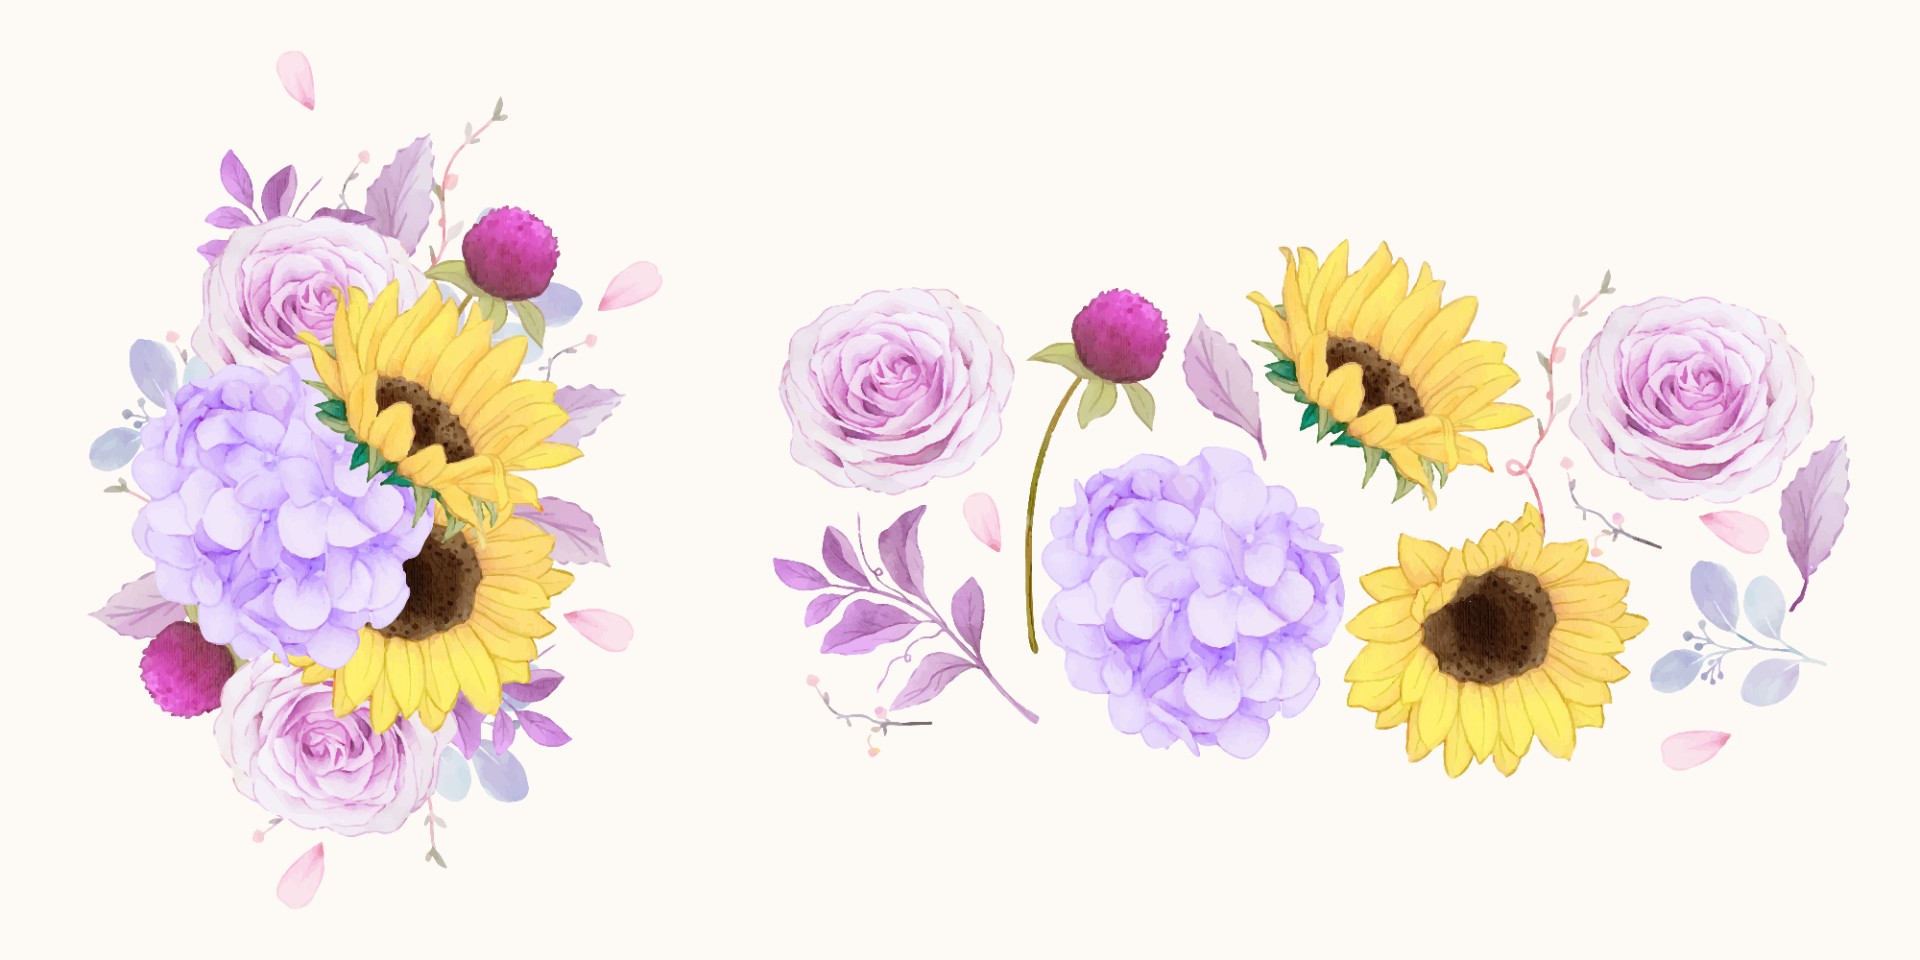 紫色玫瑰绣球花和向日葵插图0